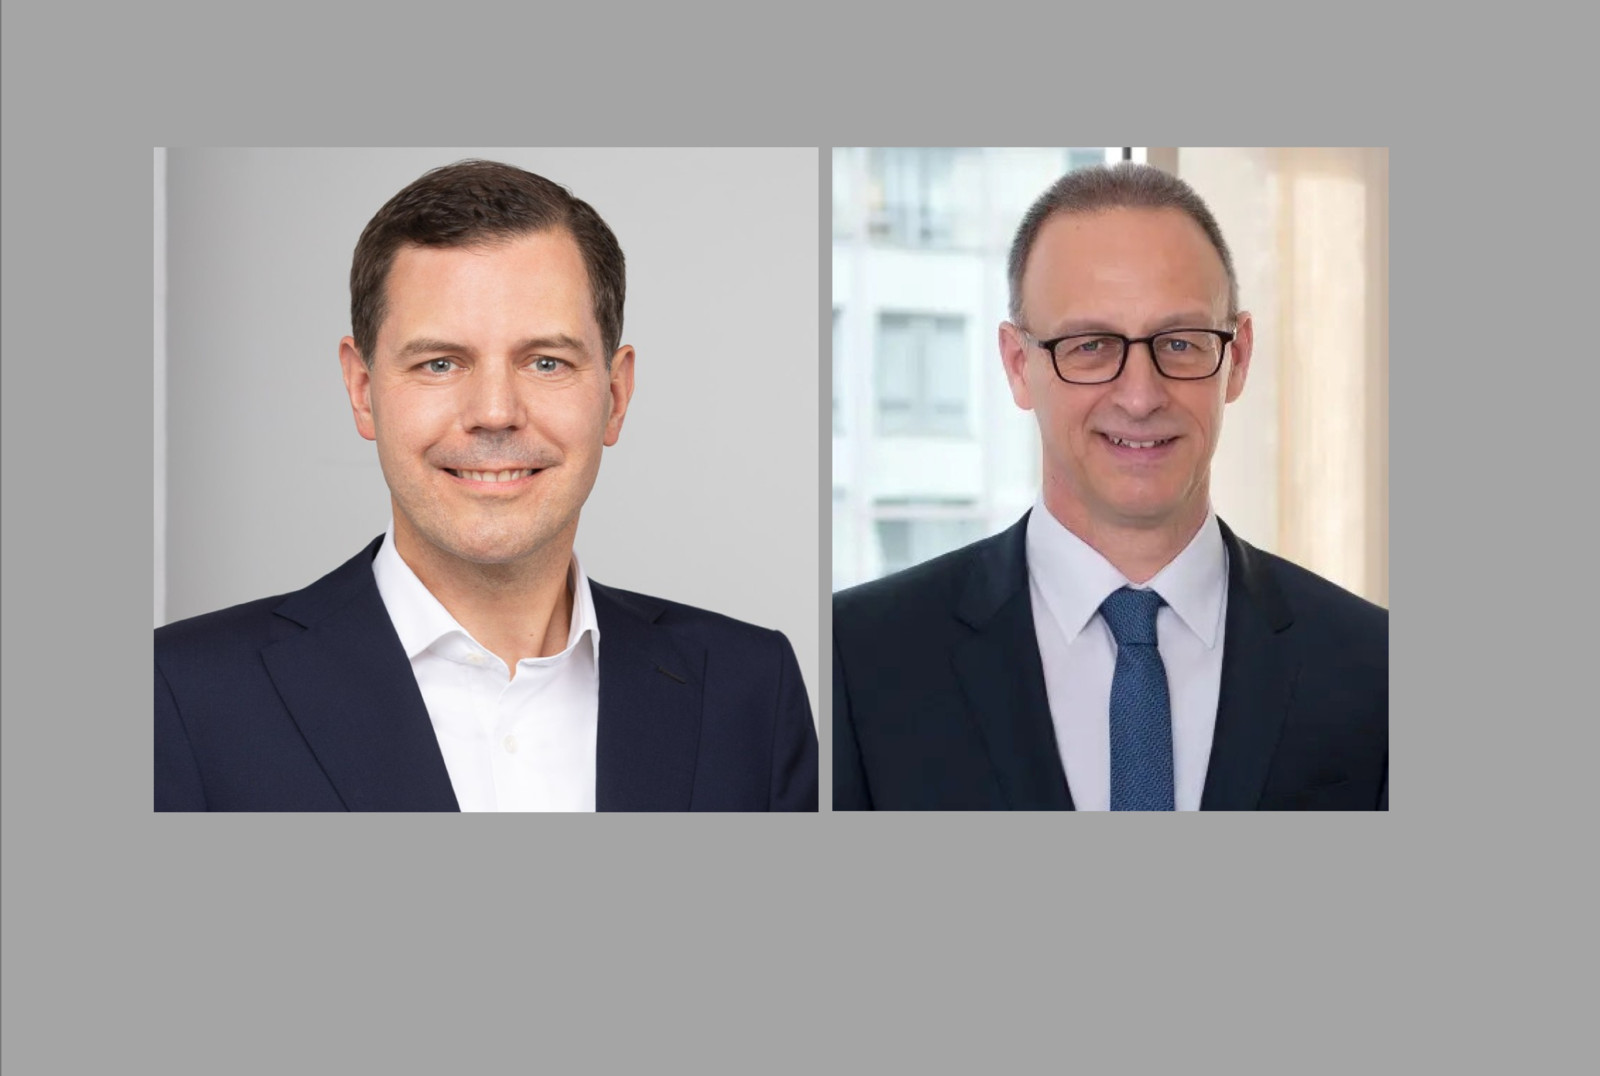 Die beiden neuen an der Spitze der Autobahn GmbH: Dr. Michael Günther (li.) und Dirk Brandenburger (re.)